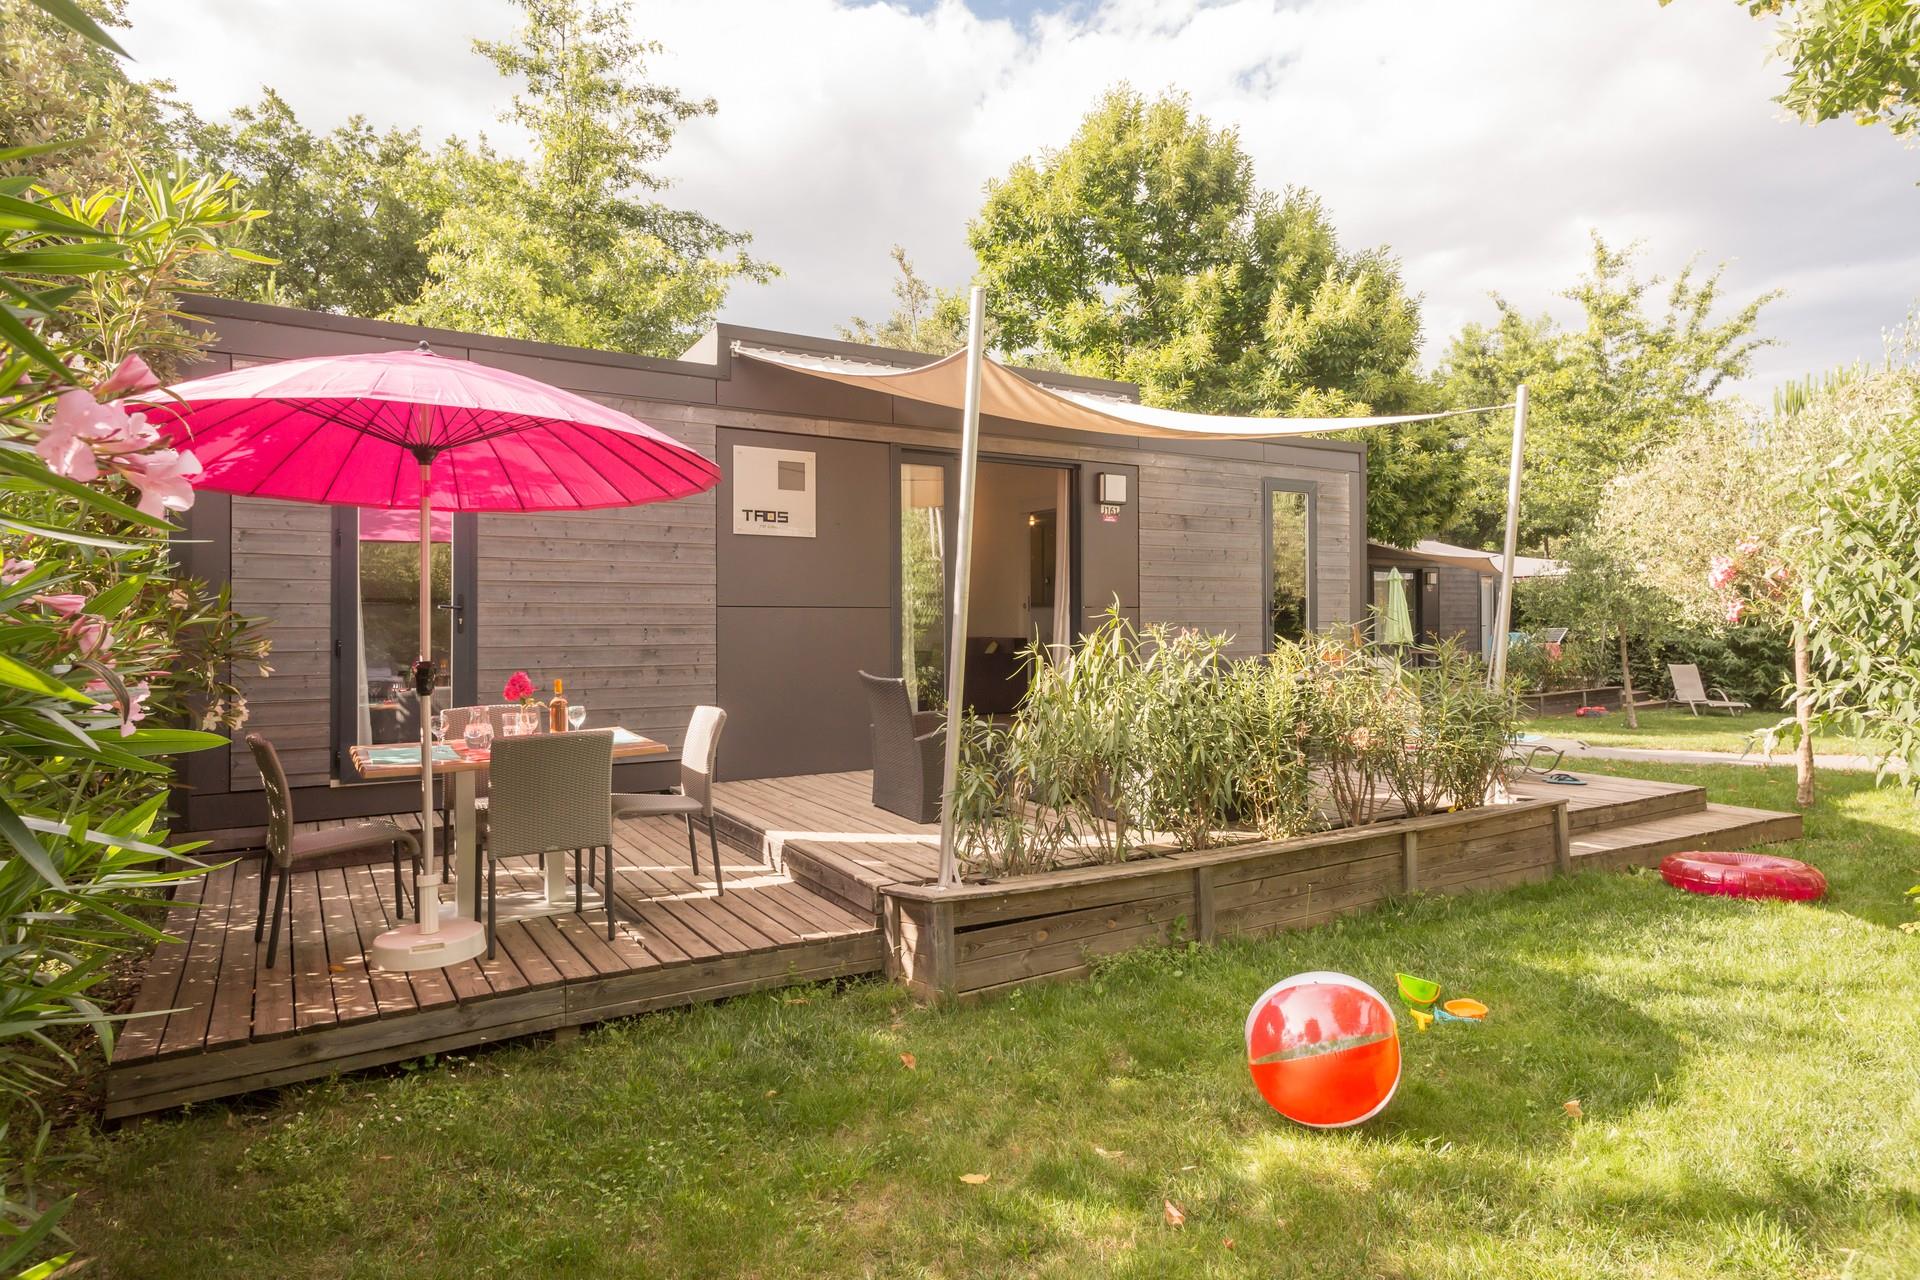 Location - Cottage Premium - 2 Chambres - 40M² - Terrasse - Climatisé - Tv - Camping Sandaya SOLEIL VIVARAIS